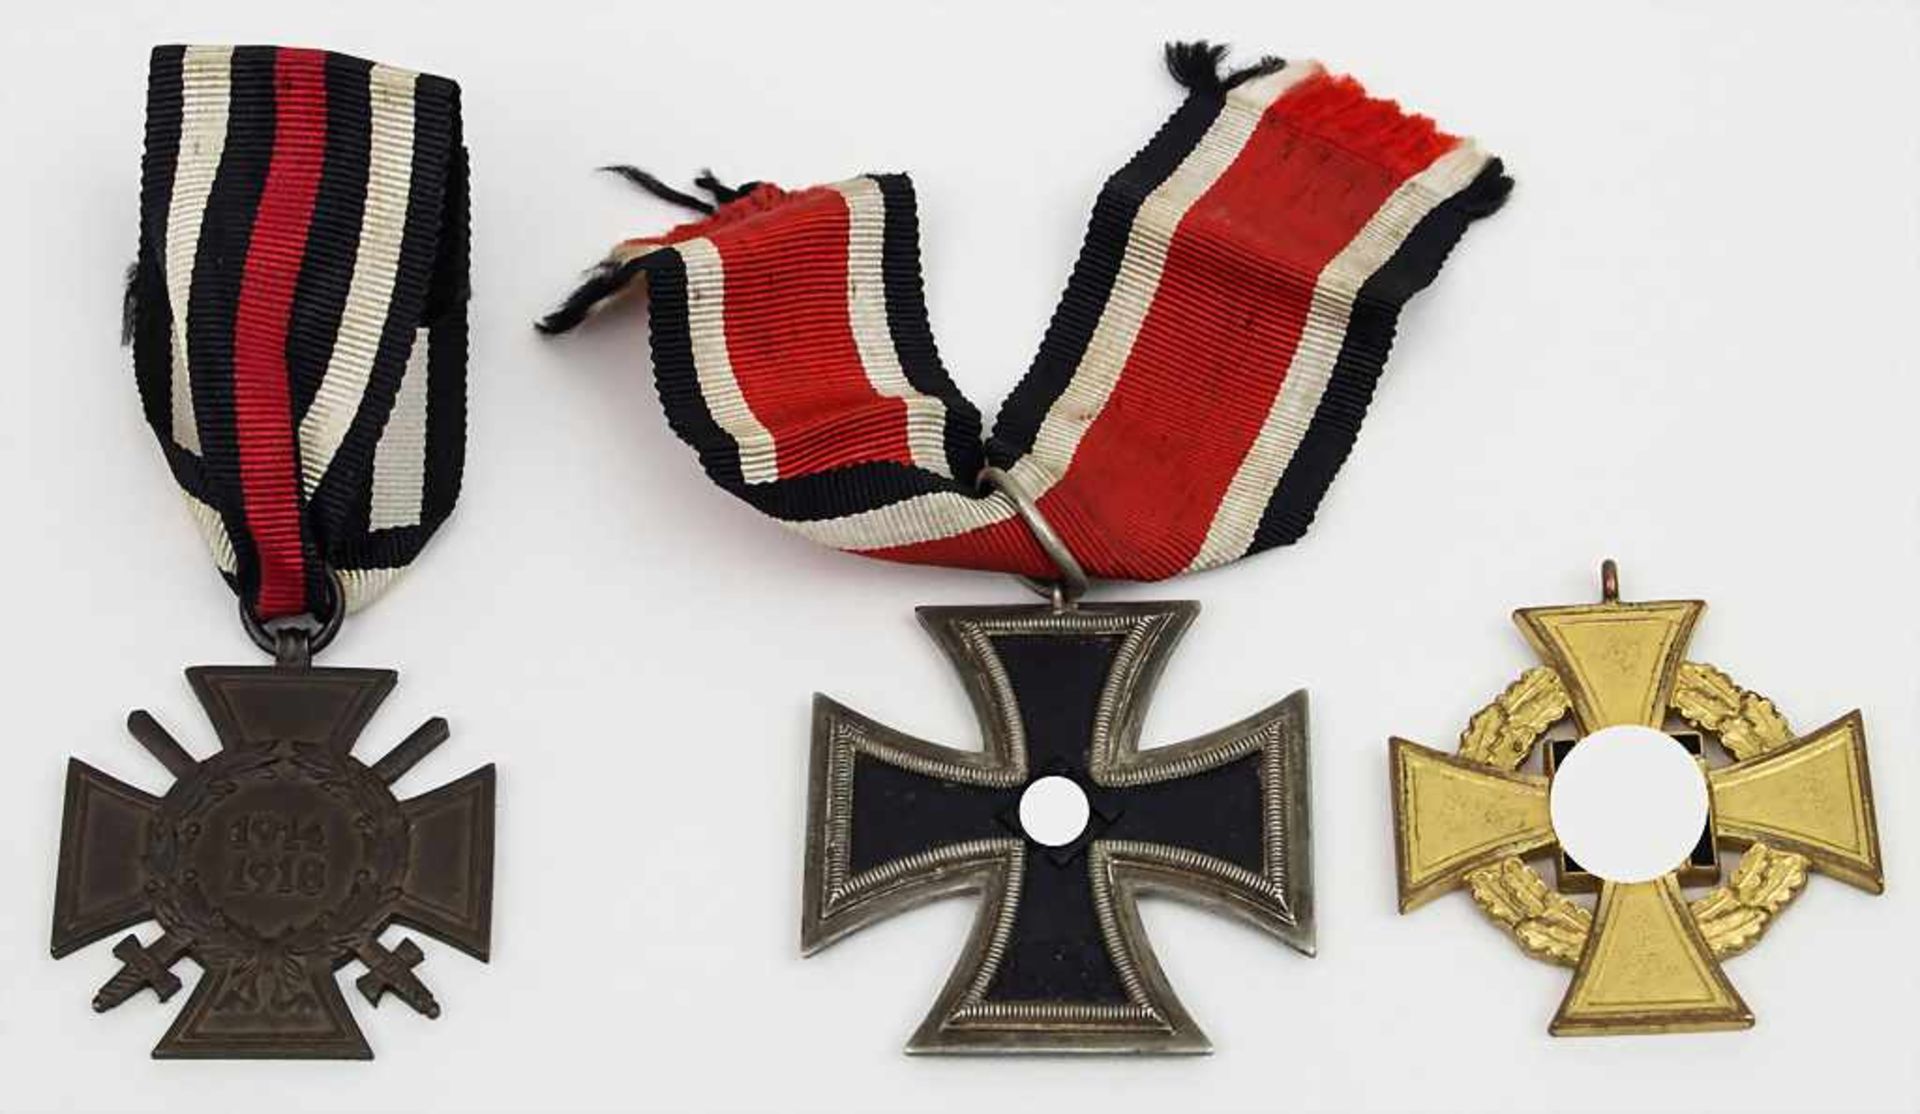 3 Ehrenauszeichnungen / 3 honor medals, 2. WK Eisernes Kreuz am Band, 2. Klasse 1939;Treuedienst-